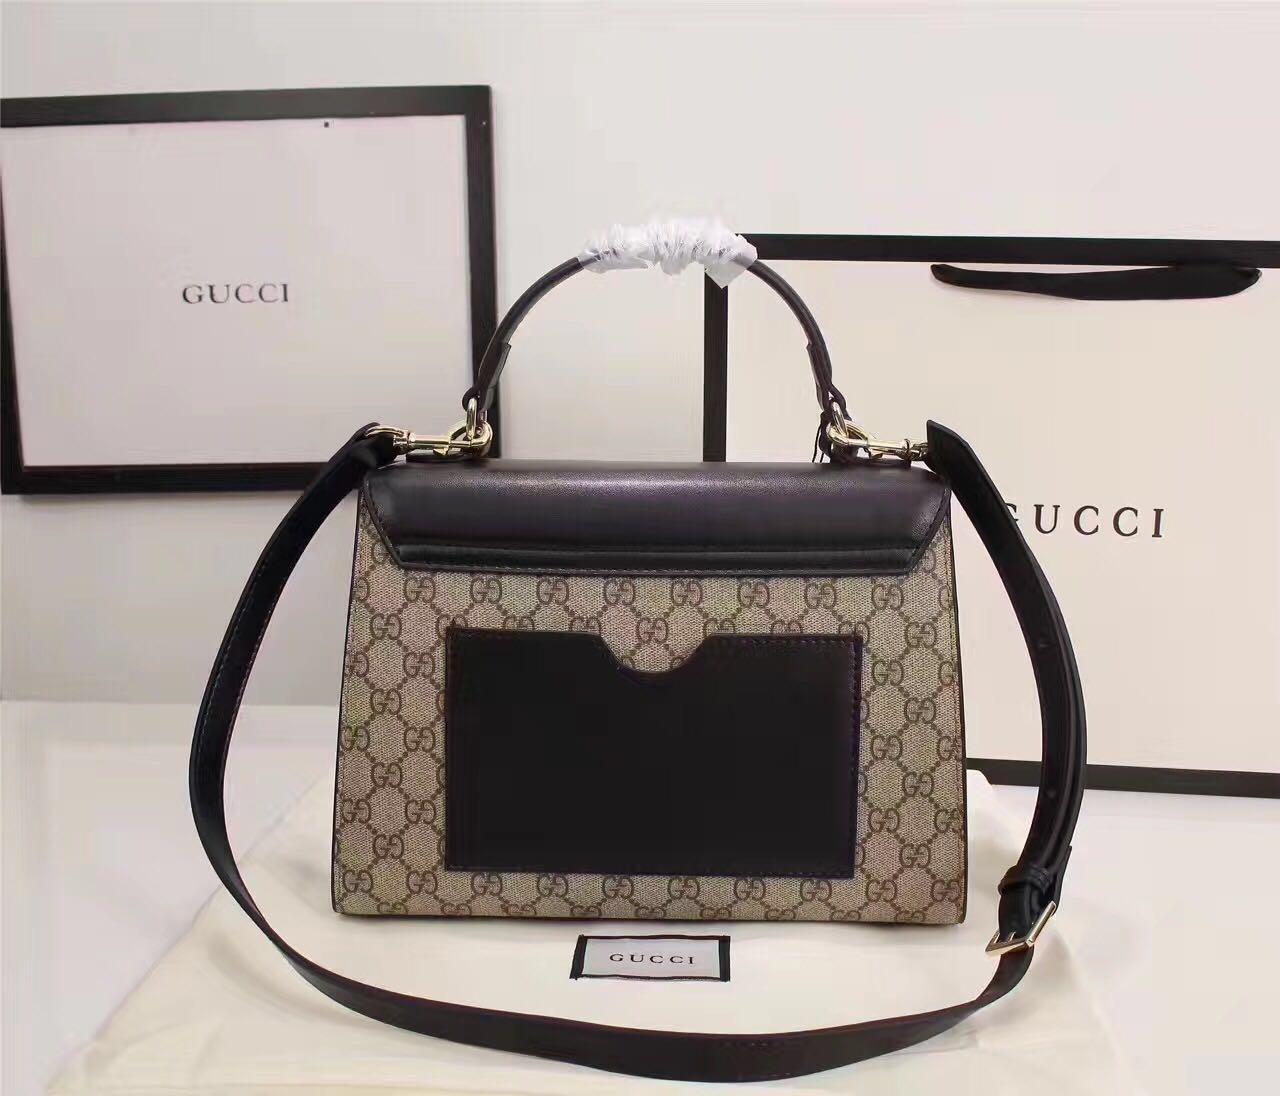 Gucci Bags : Purse Valley,Designer Replica Handbags,Premium Replica Handbags  at PurseValley